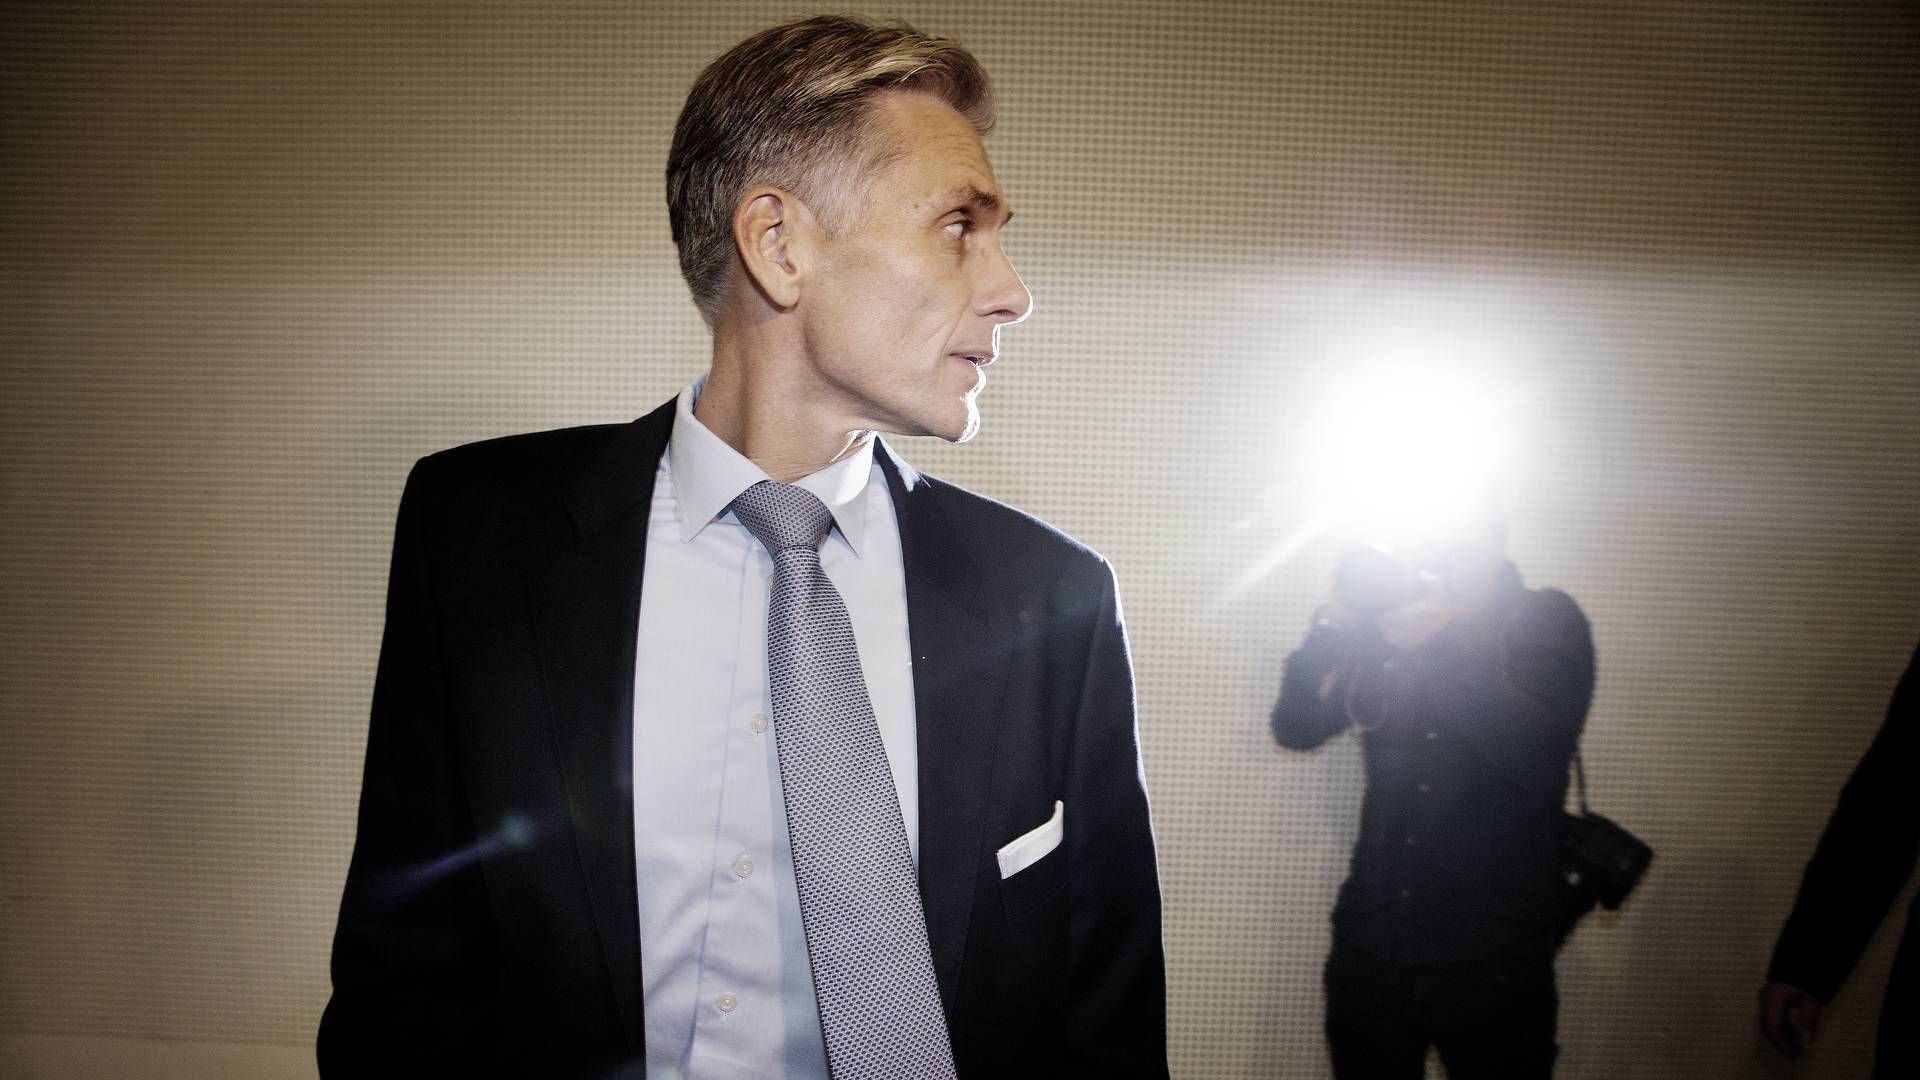 Tidligere Danske bank-sjef Thomas Borgen er saksøkt personlig av bankens investorer. | Foto: Martin Lehmann/Politiken